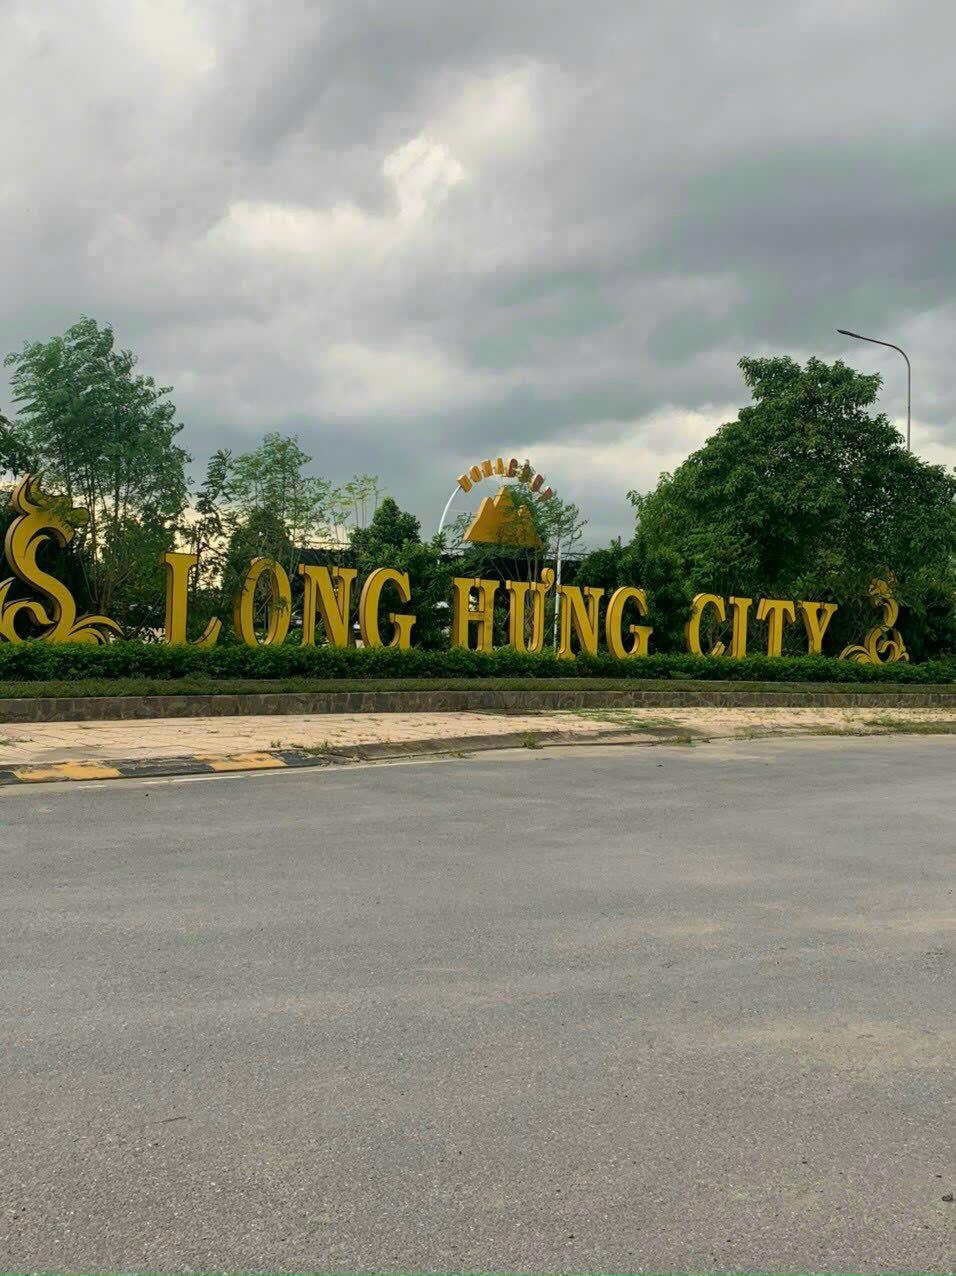 SỞ HỮU NGAY BIỆT THỰ VEN SÔNG - tại Khu đô thị LONG HƯNG CITY - TP. Biên Hòa, Đồng Nai.1118557